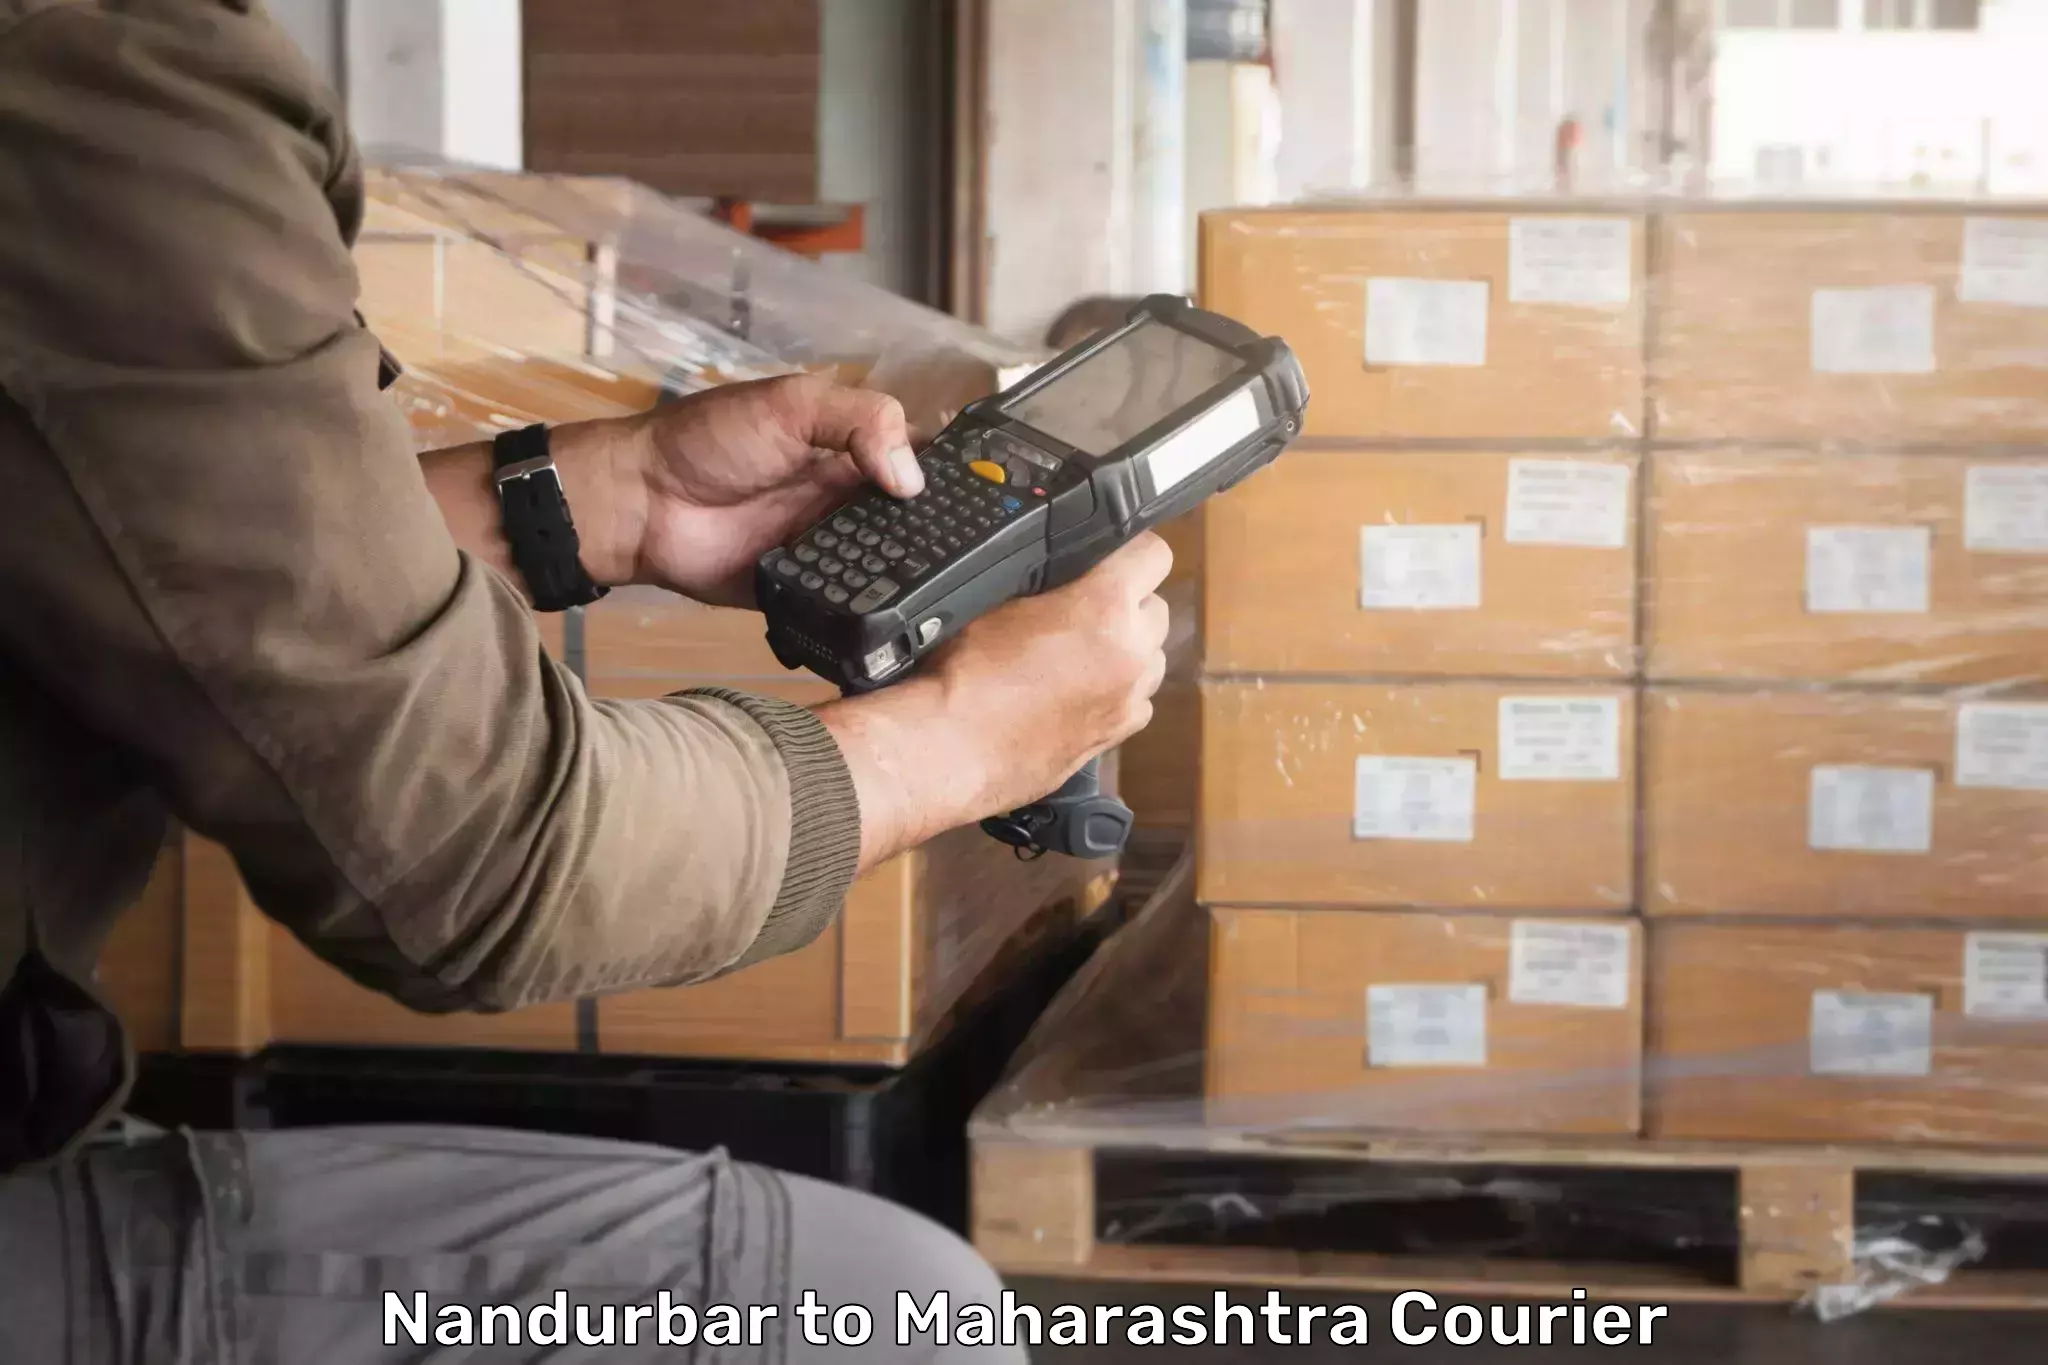 Cargo delivery service Nandurbar to Vita